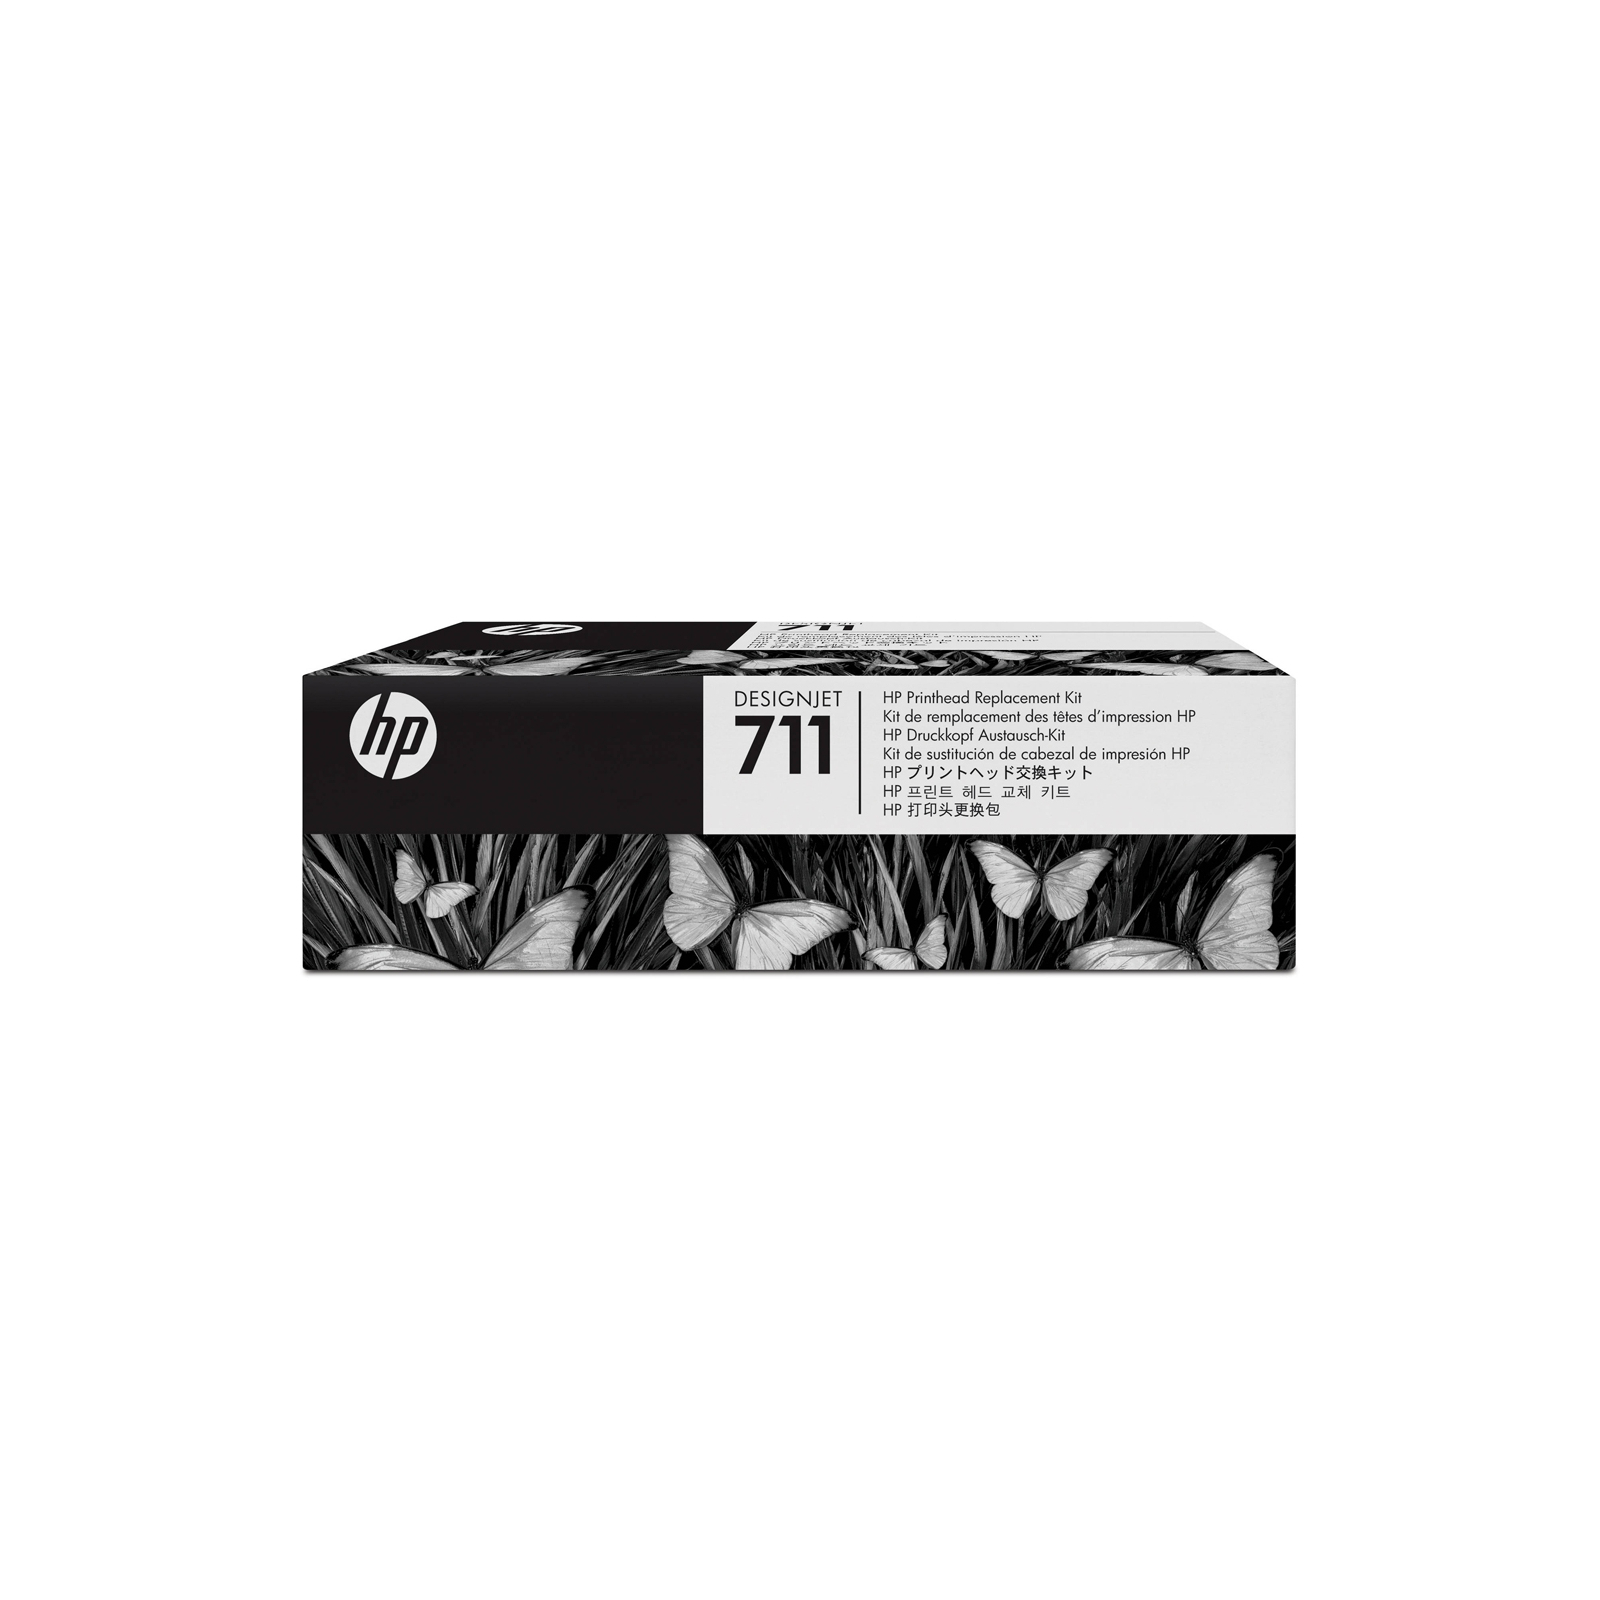 Печатающая головка HP No.711 DesignJet 120/520 Replacement kit (C1Q10A)